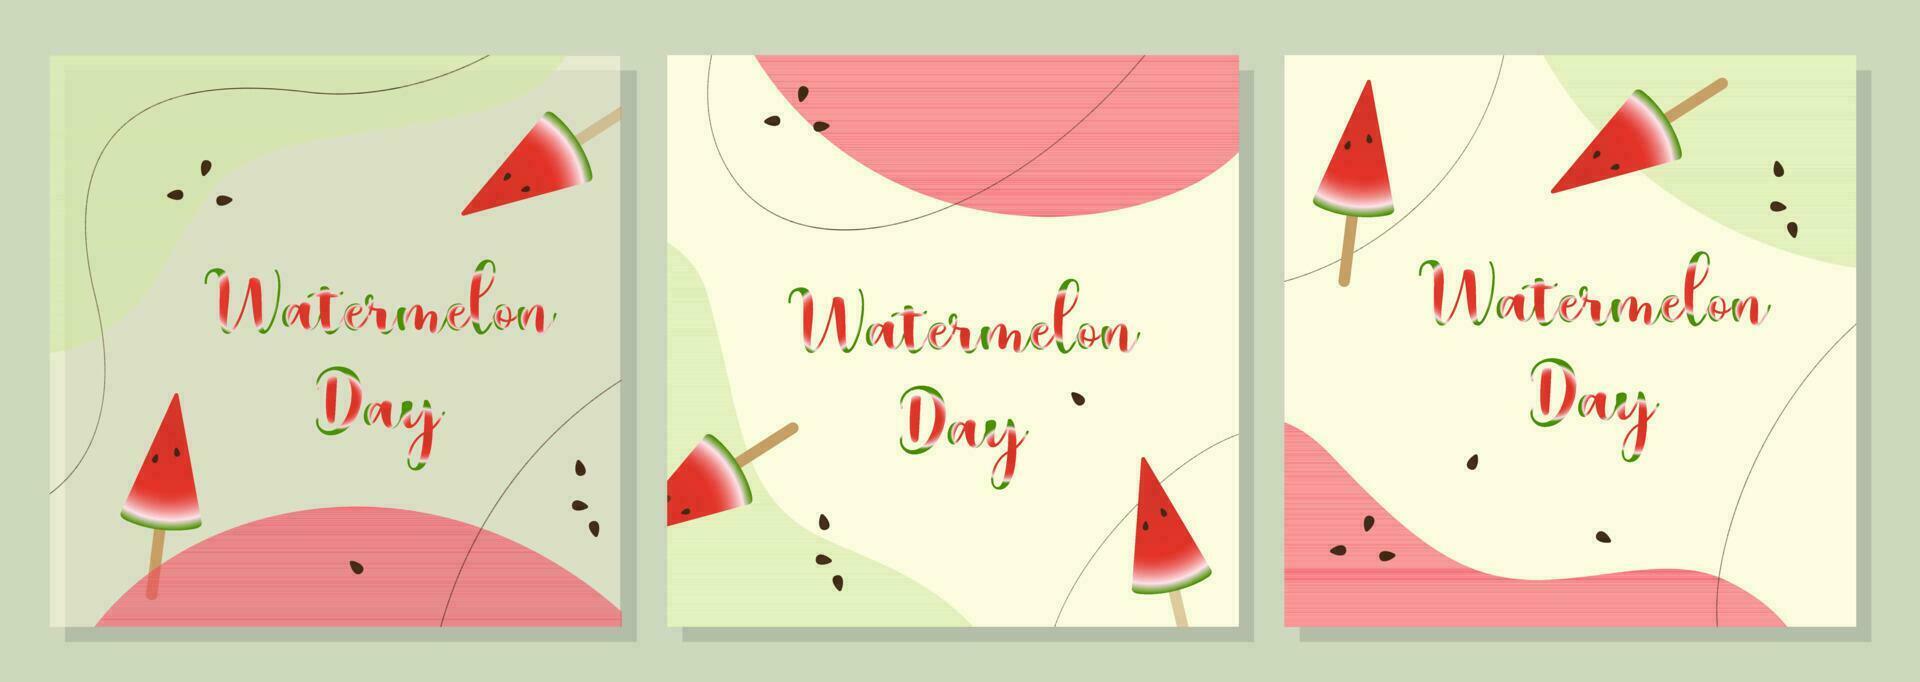 posters vattenmelon dag, röd och grön bakgrund boho stil, banderoller uppsättning. vektor